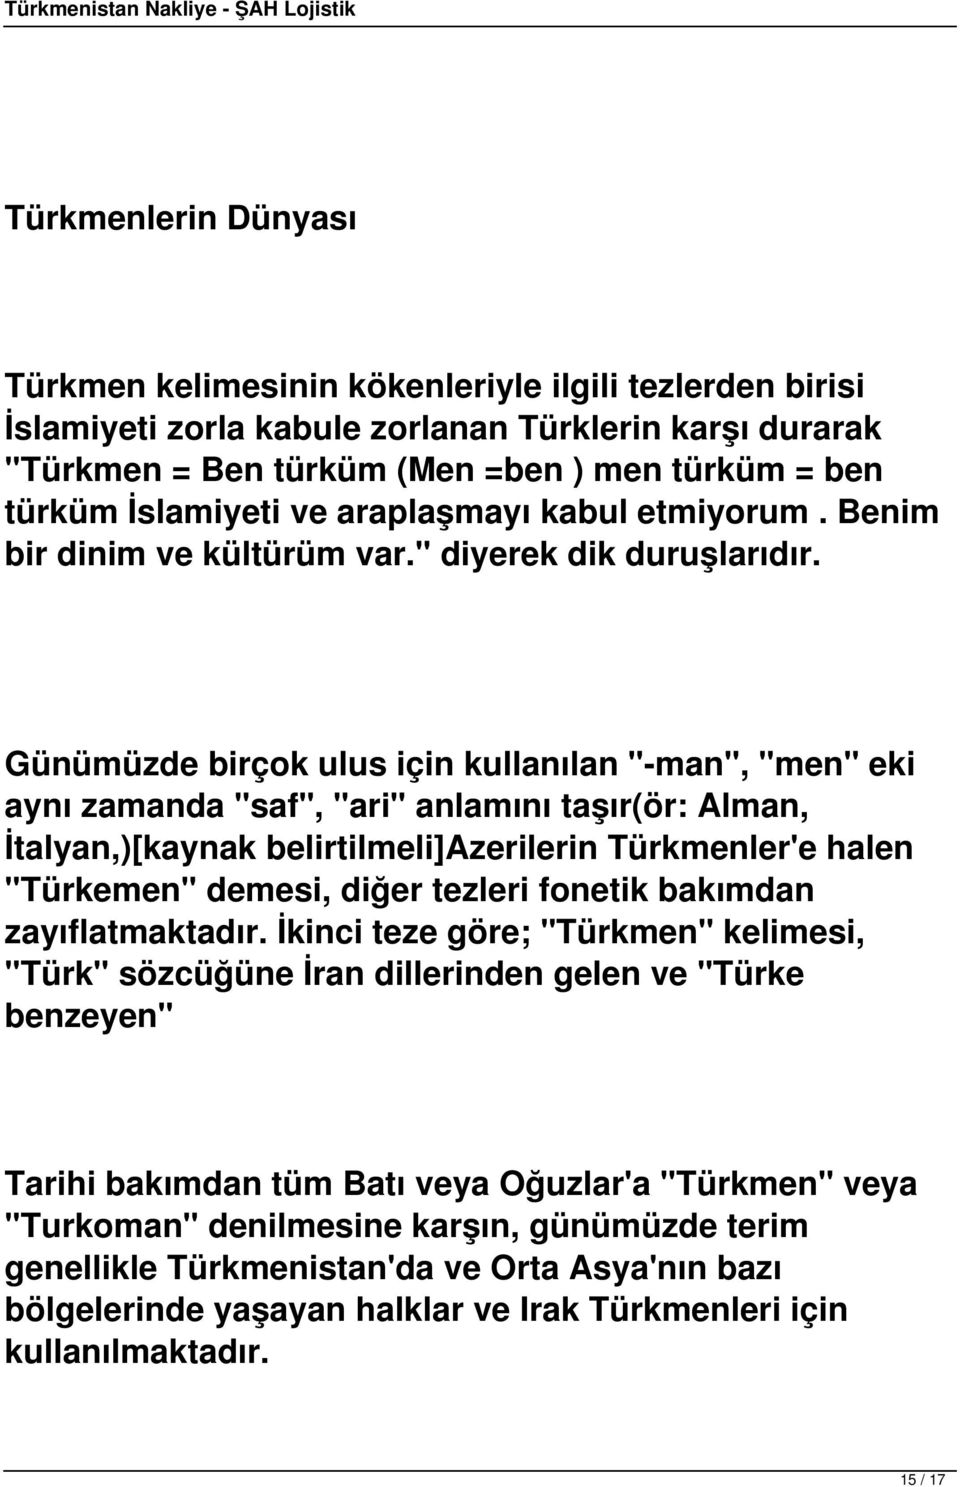 Günümüzde birçok ulus için kullanılan "-man", "men" eki aynı zamanda "saf", "ari" anlamını taşır(ör: Alman, İtalyan,)[kaynak belirtilmeli]azerilerin Türkmenler'e halen "Türkemen" demesi, diğer